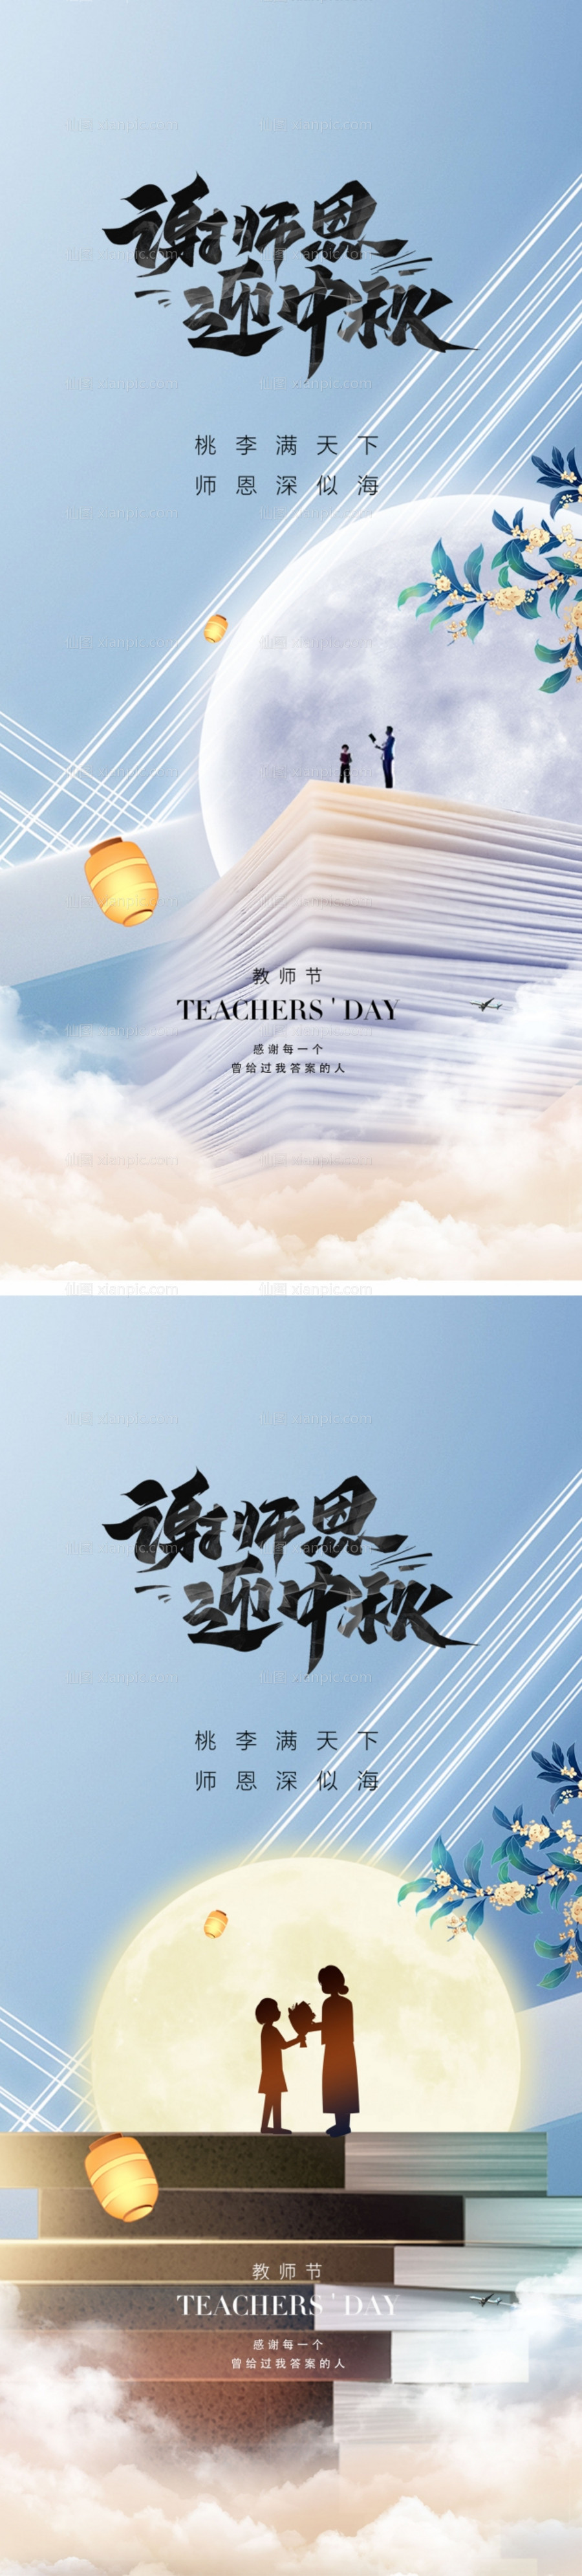 素材乐-地产教师节中秋节系列海报